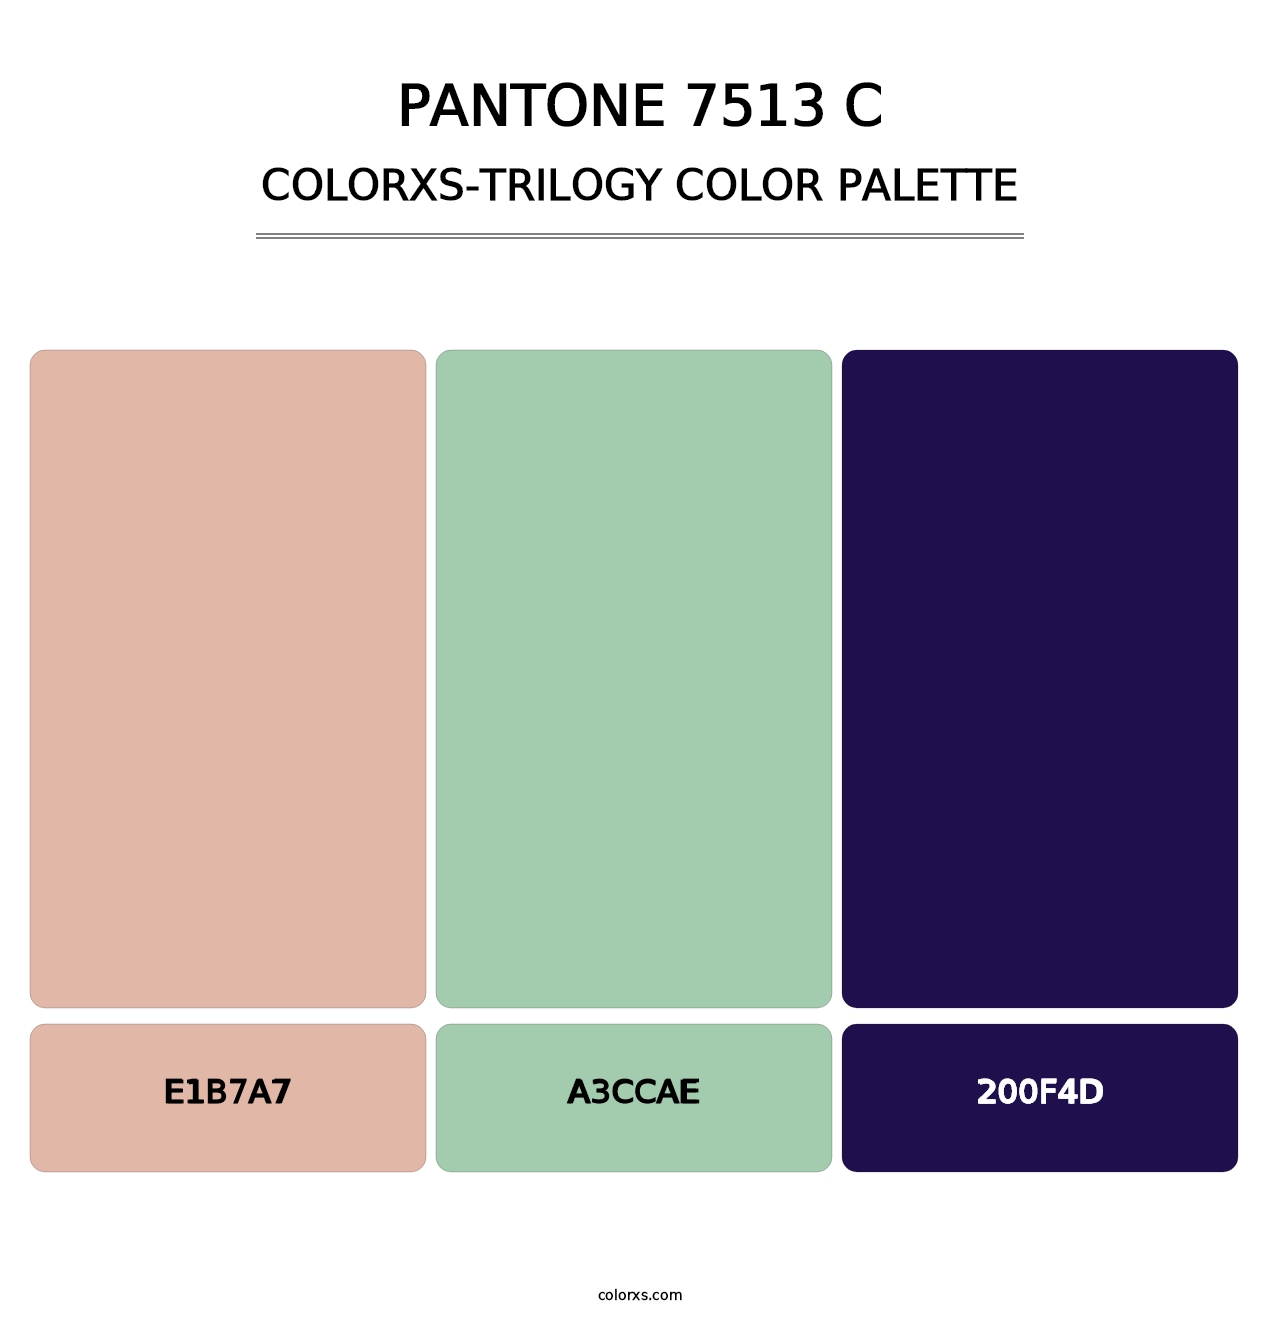 PANTONE 7513 C - Colorxs Trilogy Palette